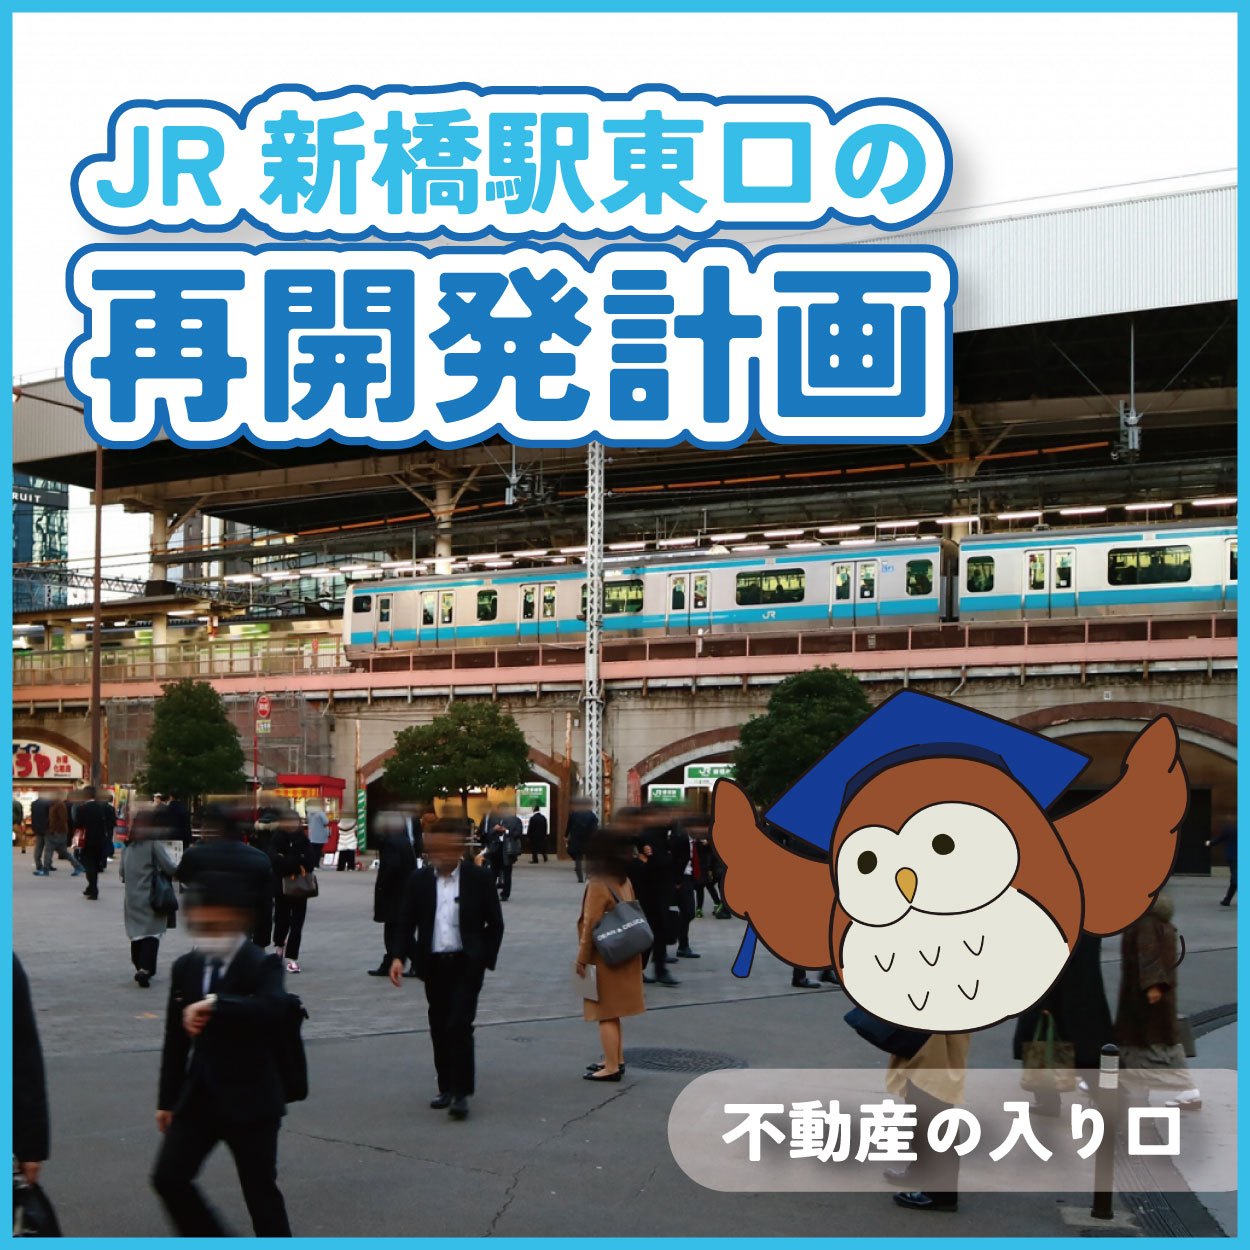 東京都心の主要な拠点の一つであるJR新橋駅東口...